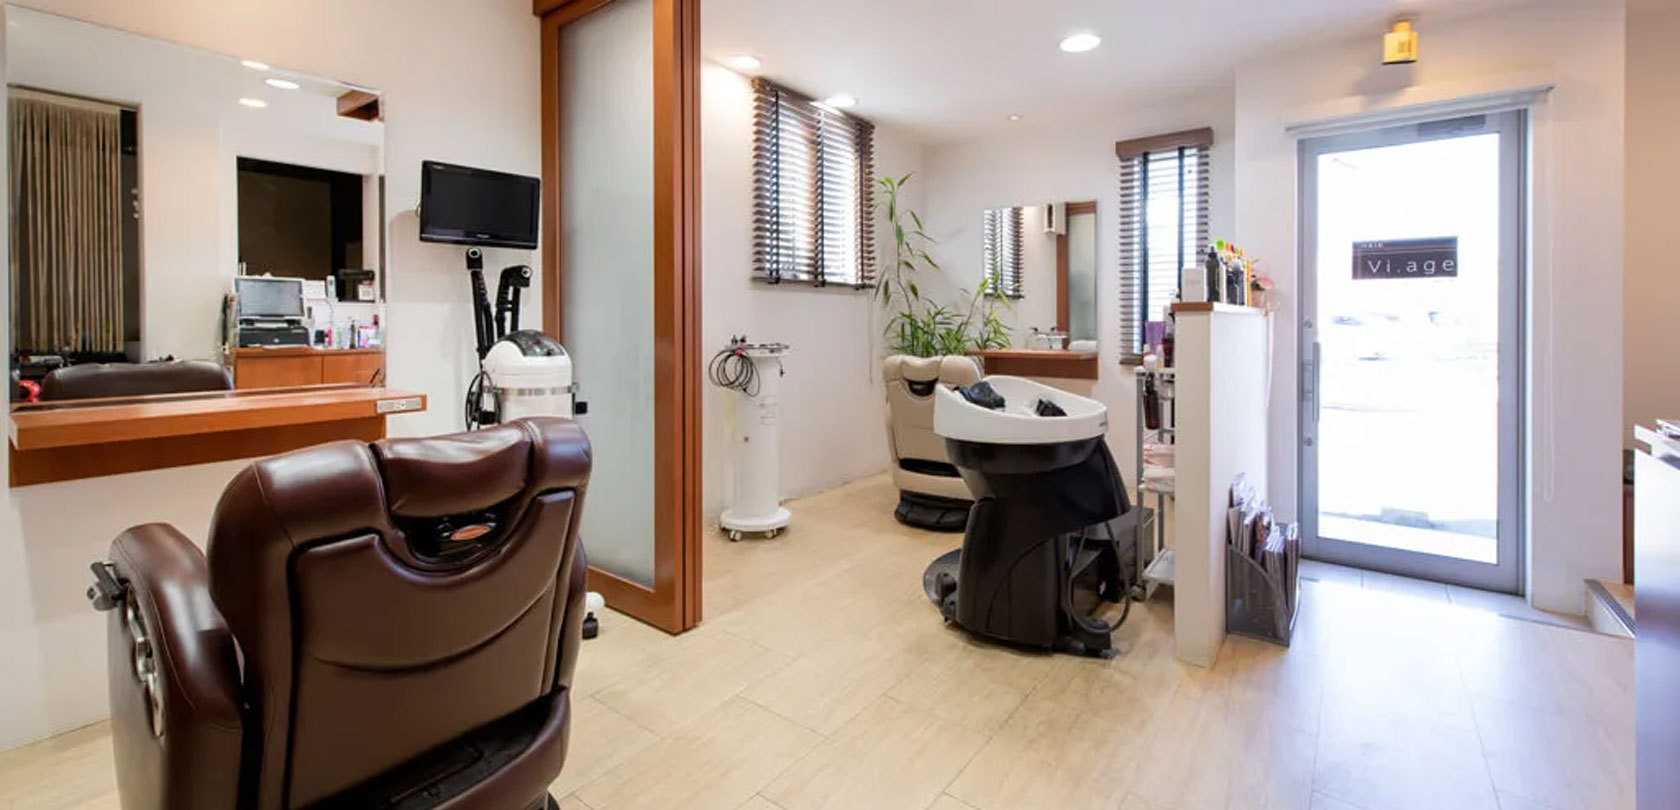 美容室Vi.ageは髪をキレイにして生まれ変わりたい人の為の特別な美容室です